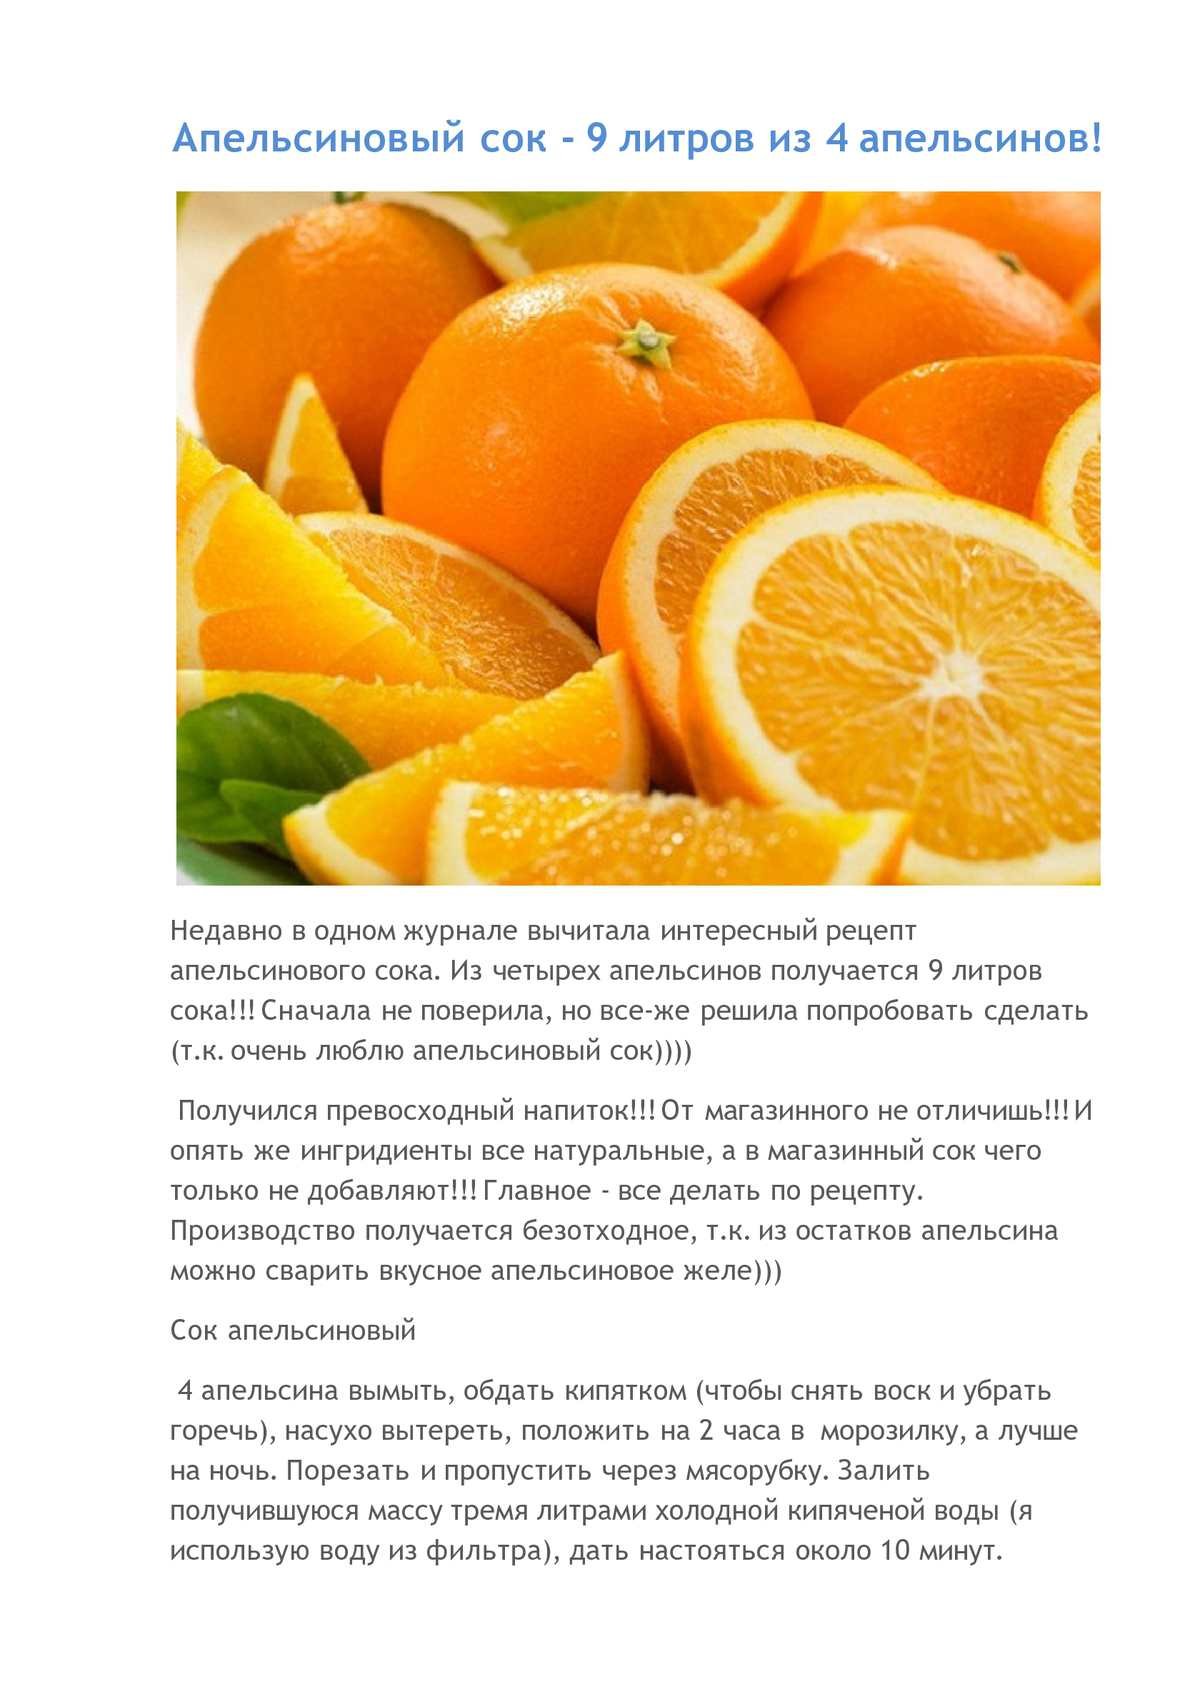 Рецепт: Апельсиновый сок - Знаменитый напиток 